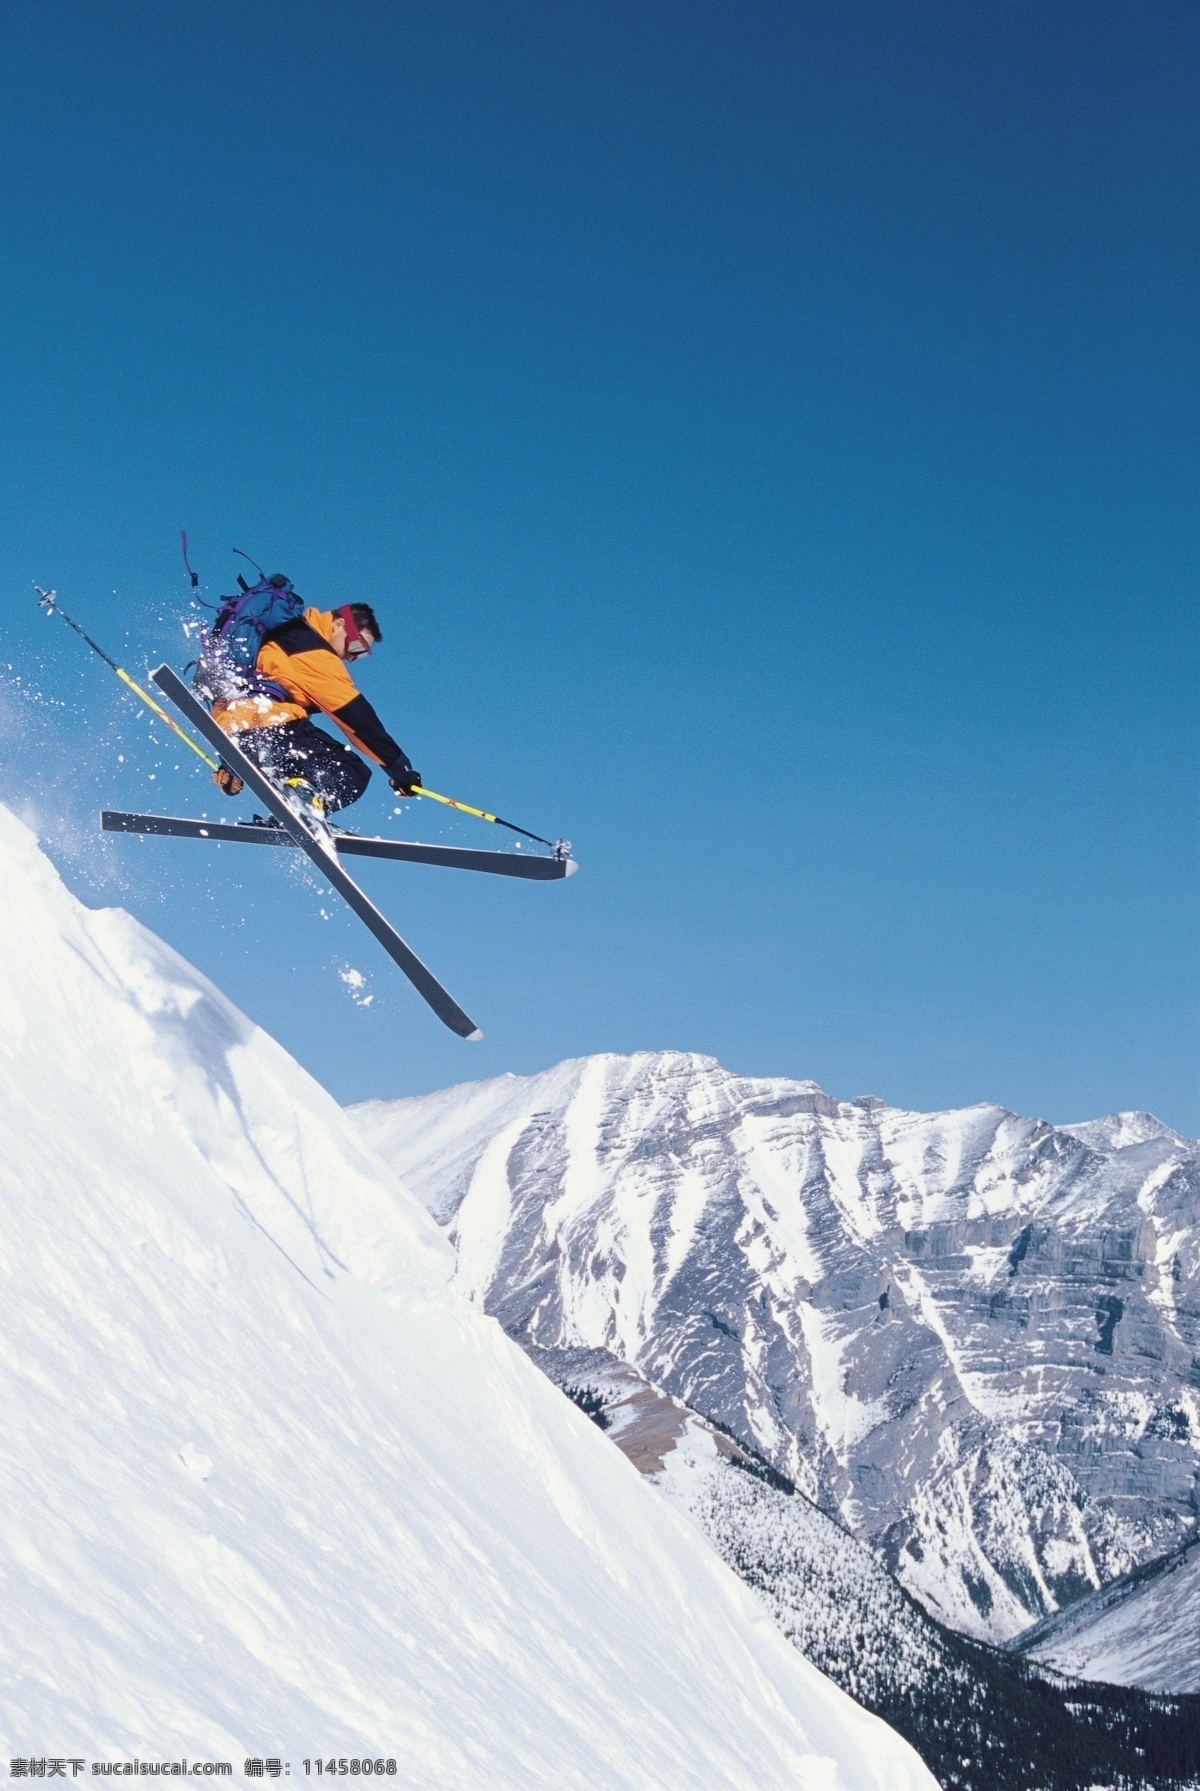 急速 下坡 瞬间 图 雪地运动 划雪运动 极限运动 体育项目 运动员 下滑 速度 运动图片 生活百科 雪山 风景 摄影图片 高清图片 体育运动 白色